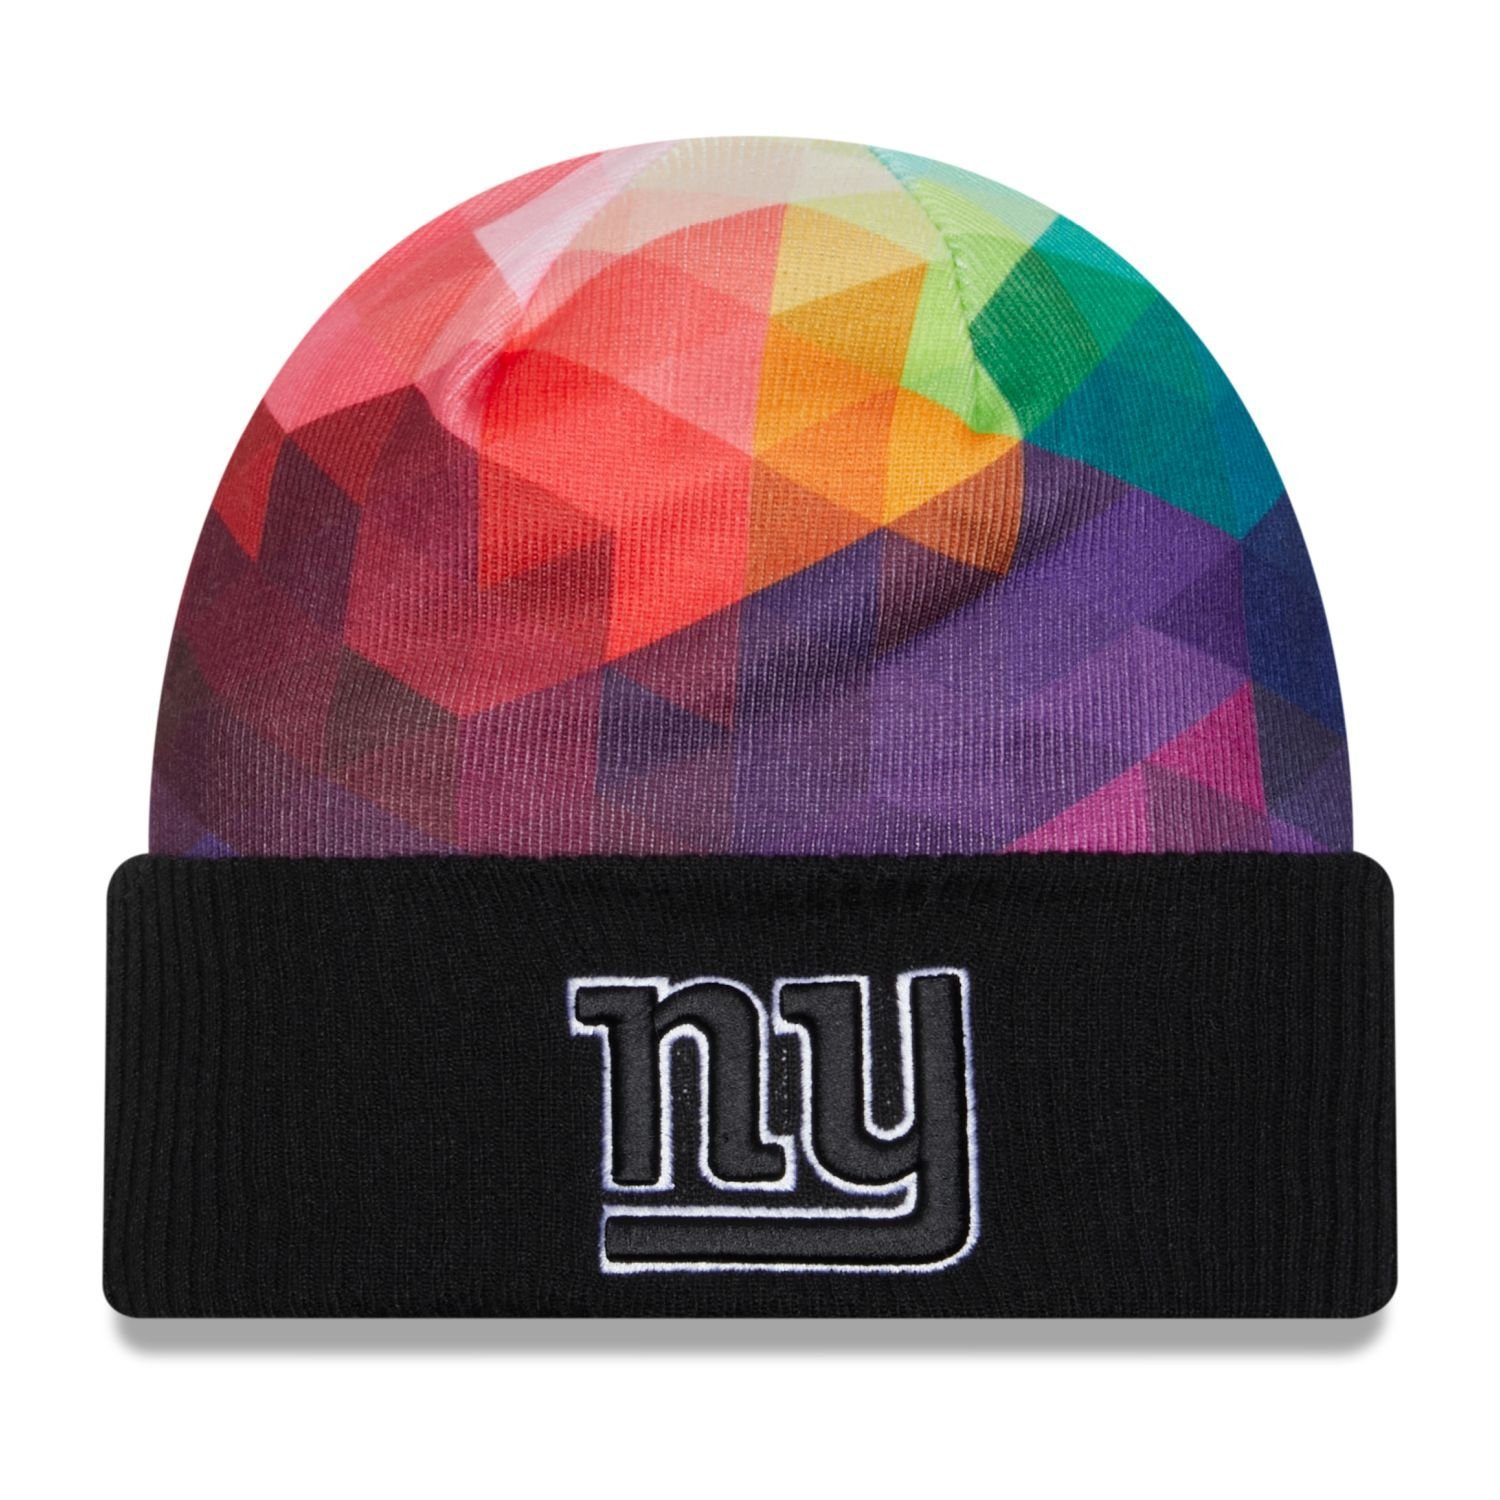 New Era Fleecemütze Knit Beanie CRUCIAL CATCH NFL Teams New York Giants